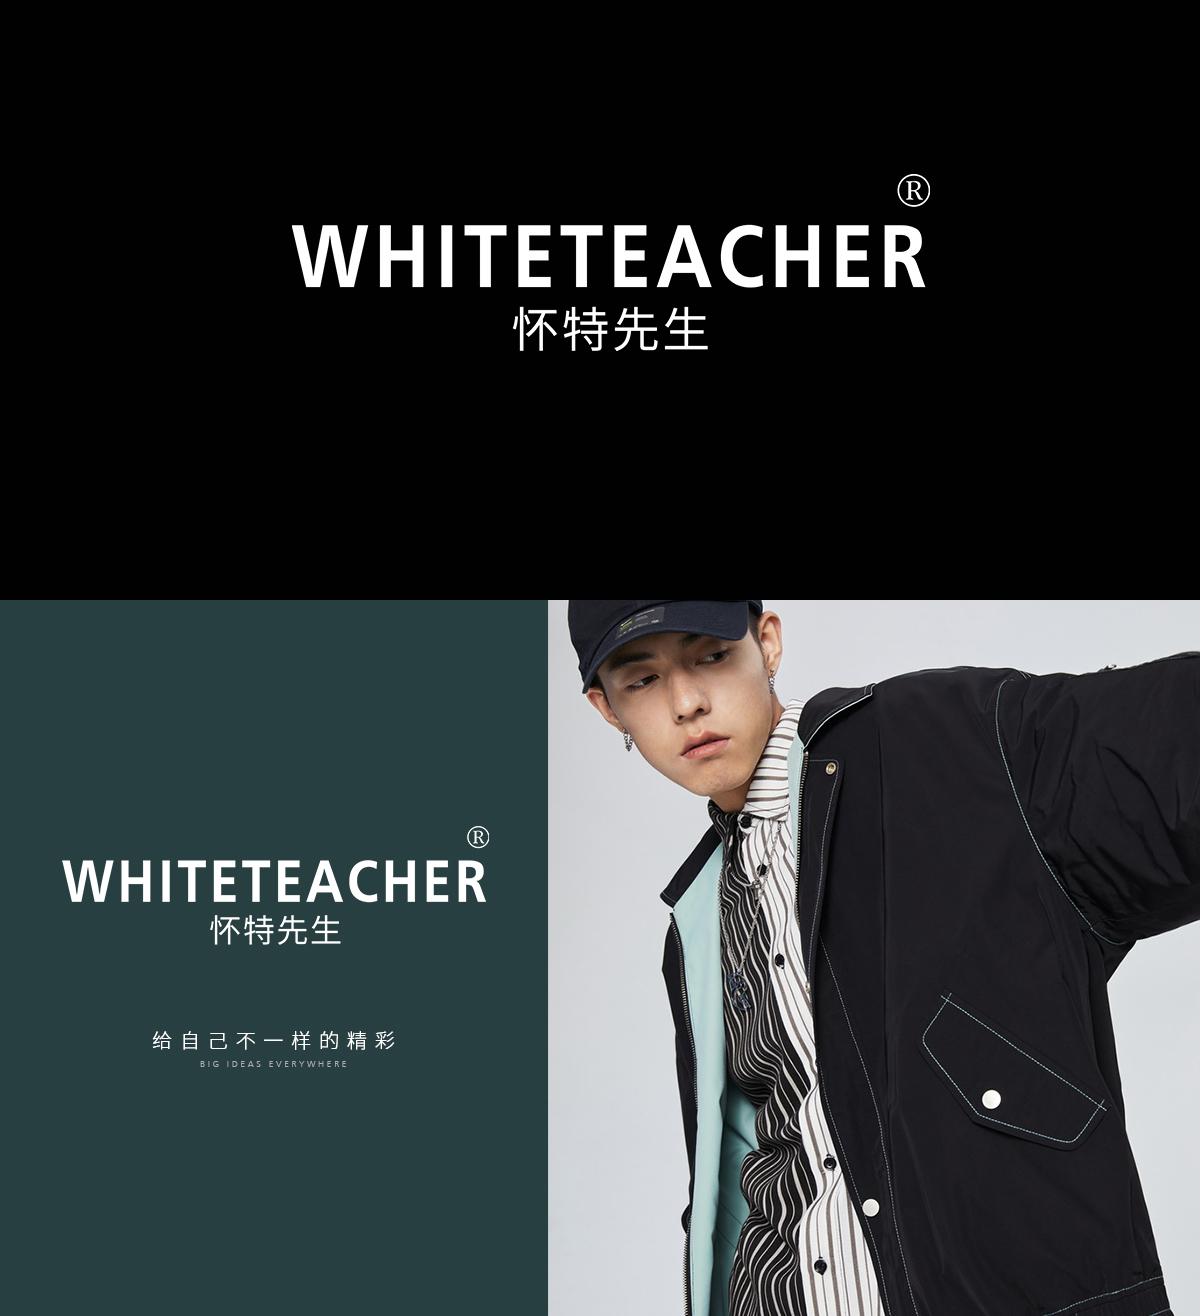 怀特先生 WHITETEACHER